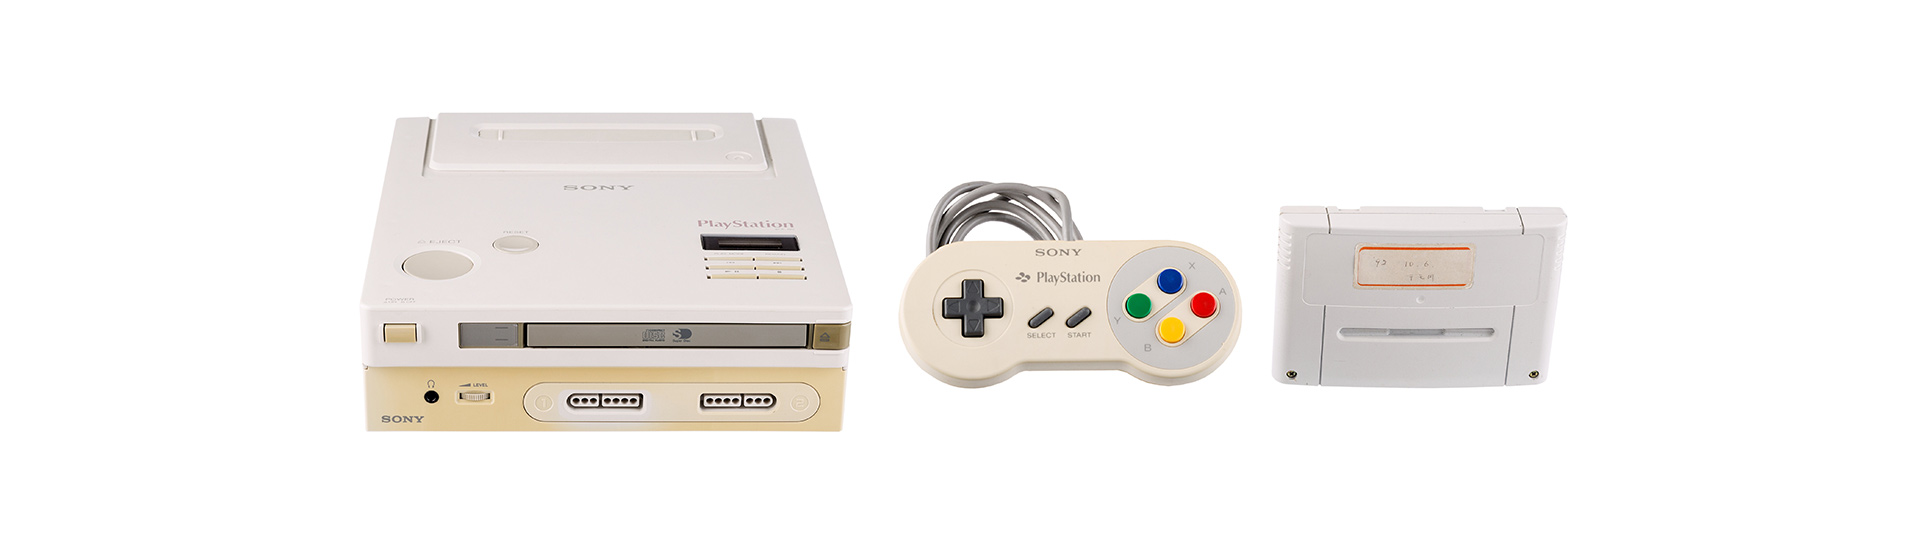 Nguyên mẫu máy chơi game "Nintendo PlayStation" được bán đấu giá